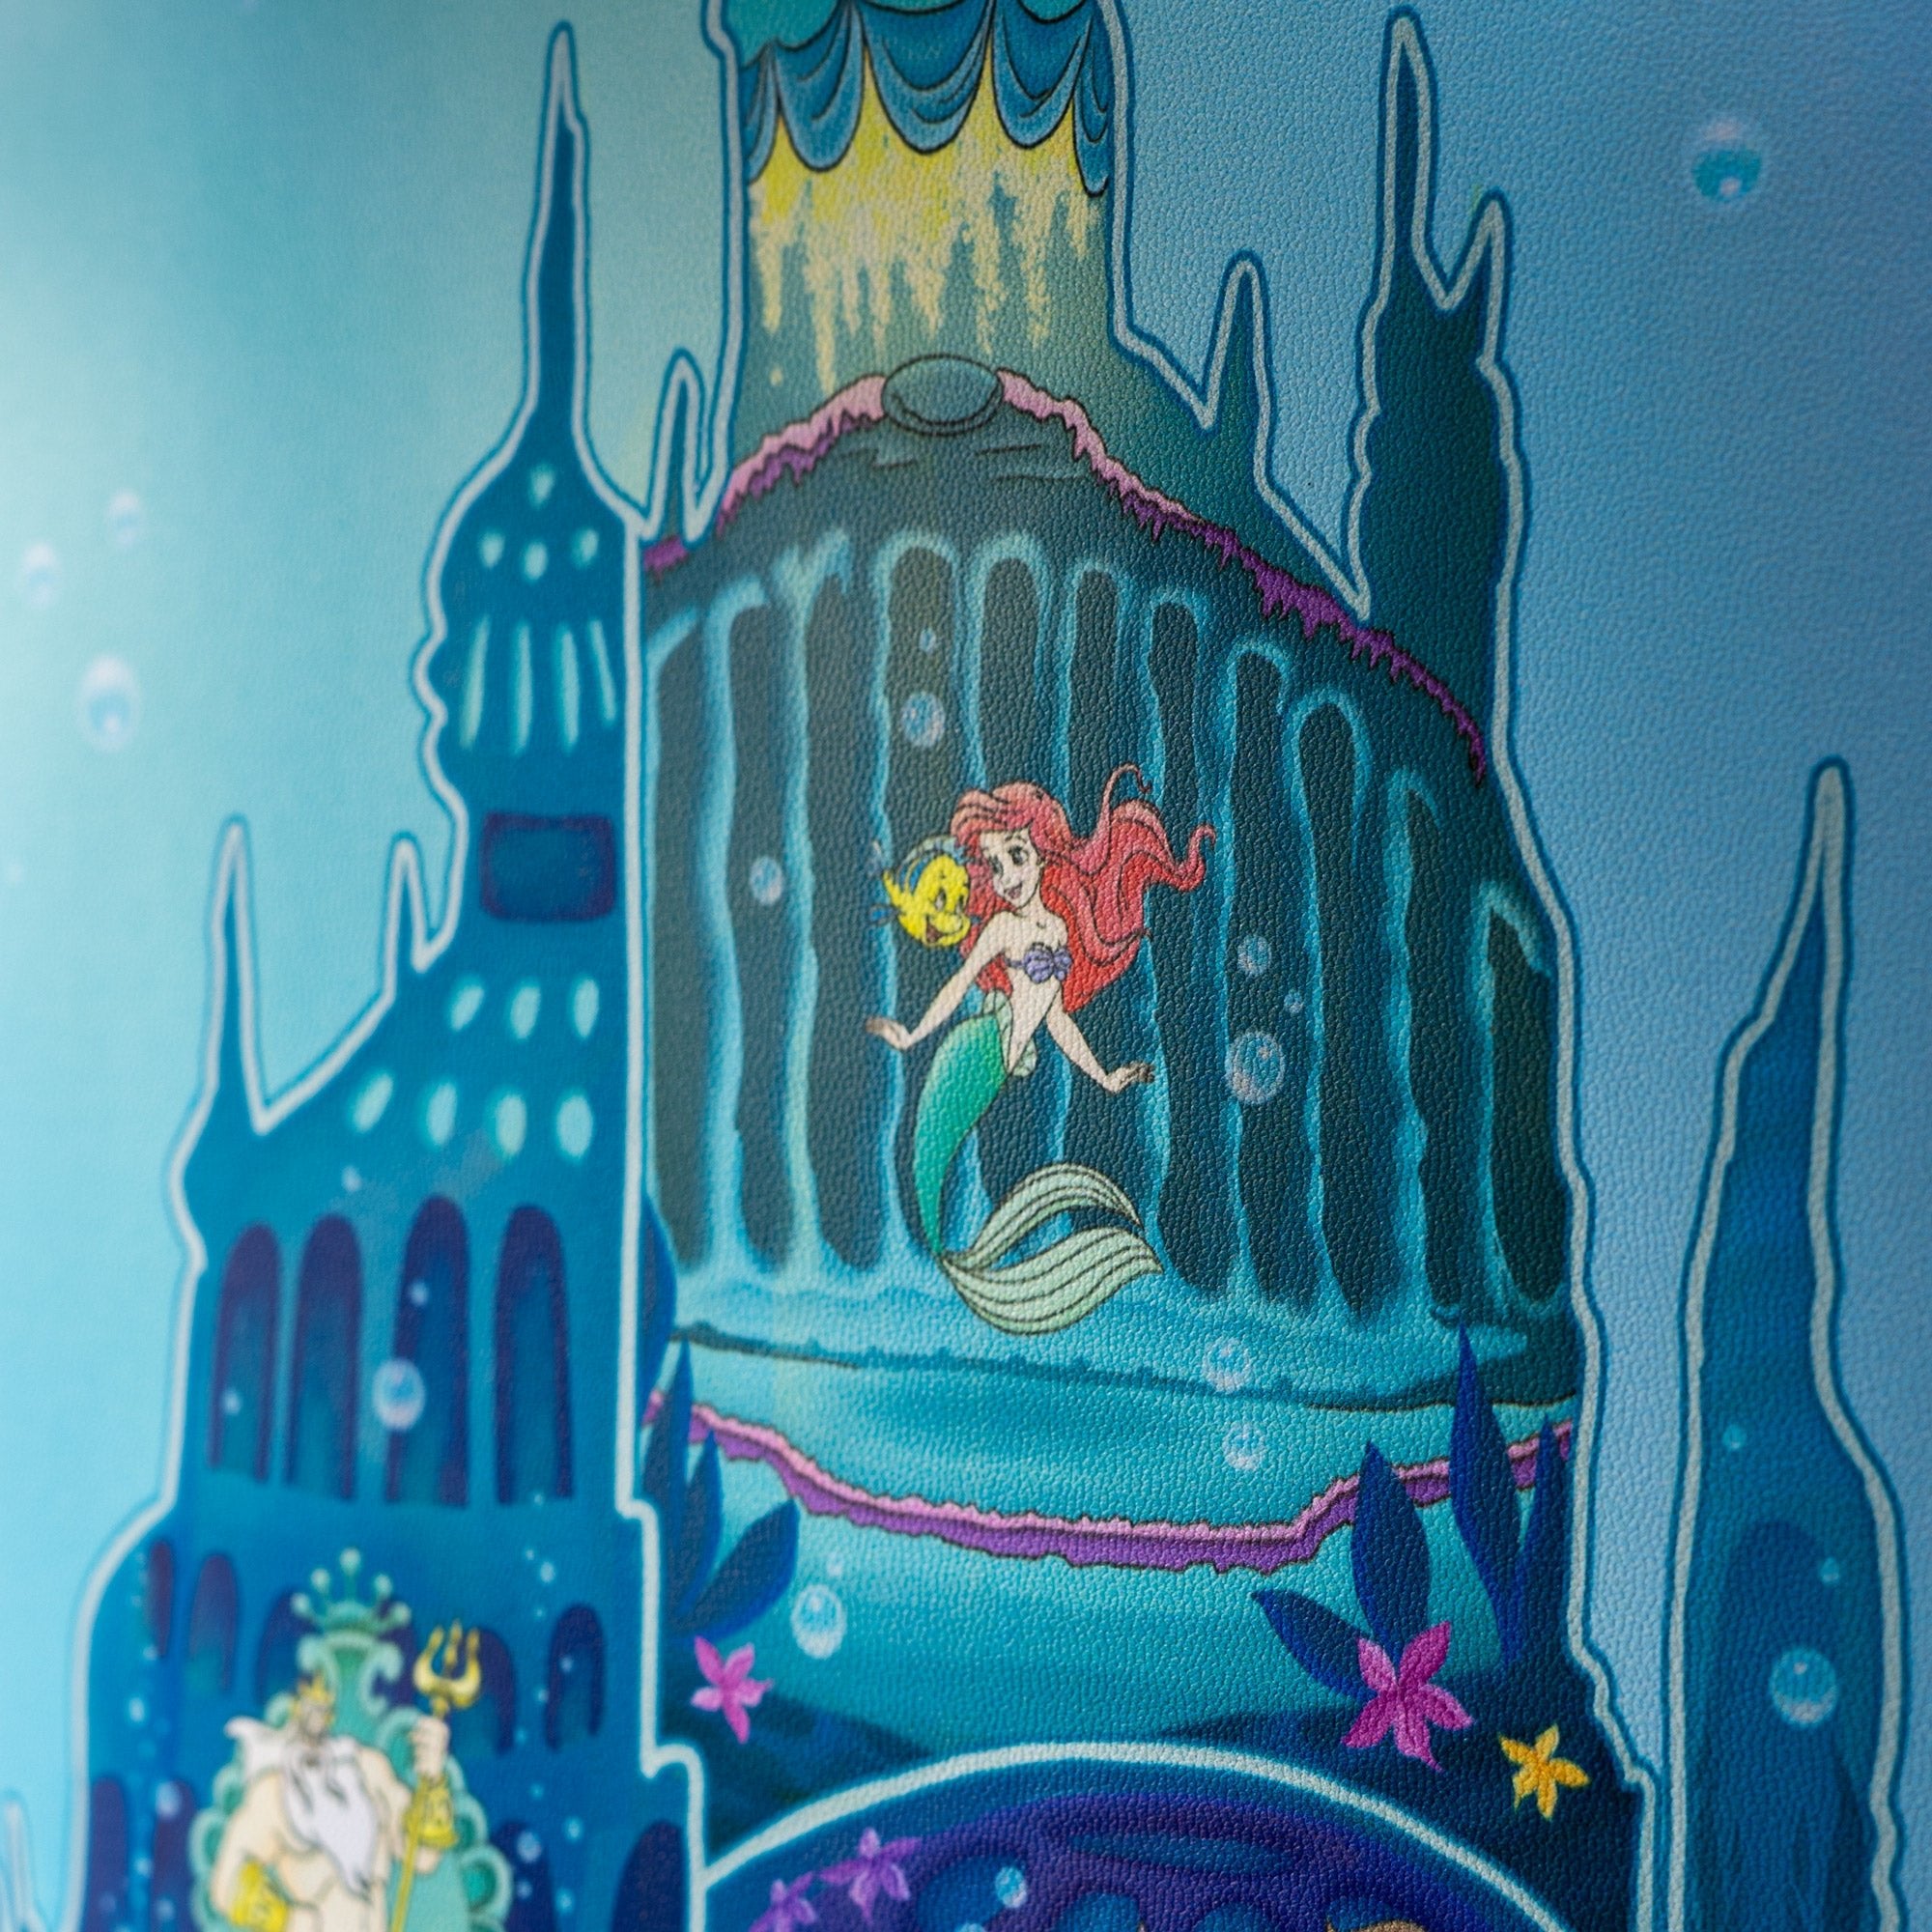 Loungefly x Disney The Little Mermaid Castle Window Mini Backpack - GeekCore